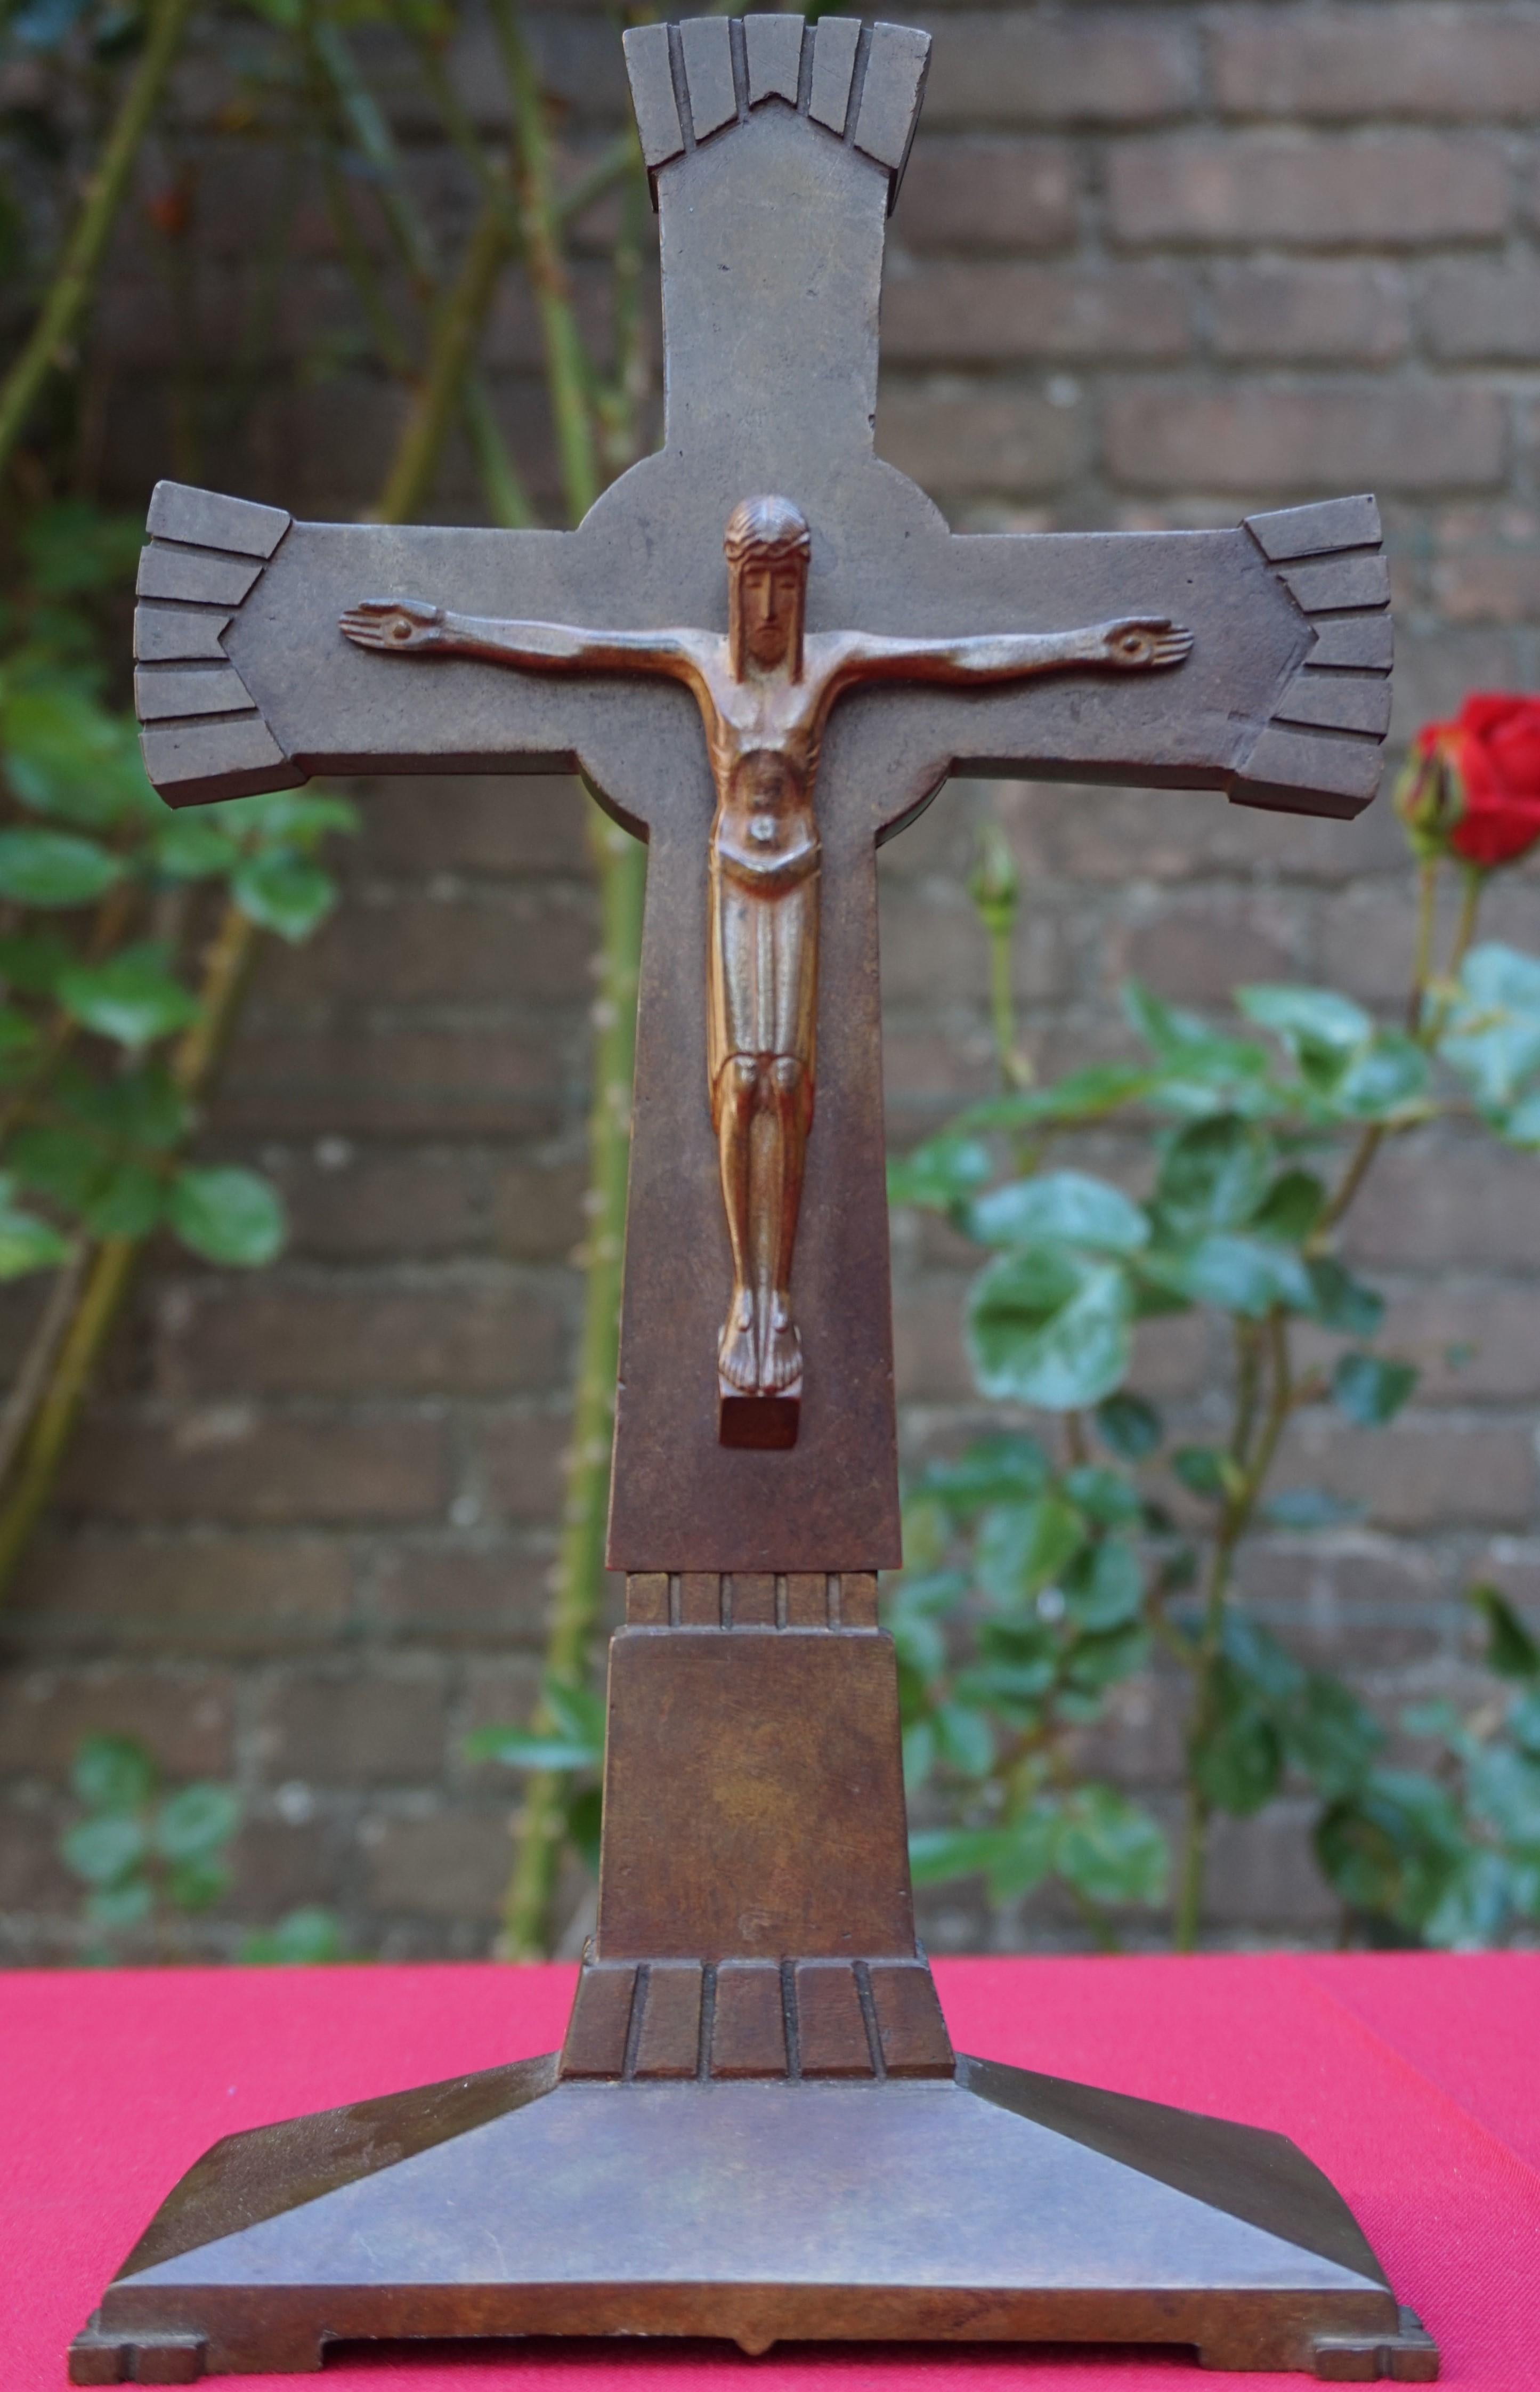 Crucifijo Art Déco único y marcado.

Si buscas una antigüedad única y significativa para expresar tu fe en la vida y las enseñanzas de Jesucristo, este crucifijo Art Decó puede ser tuyo. Tanto la singular cruz simétrica como el corpus